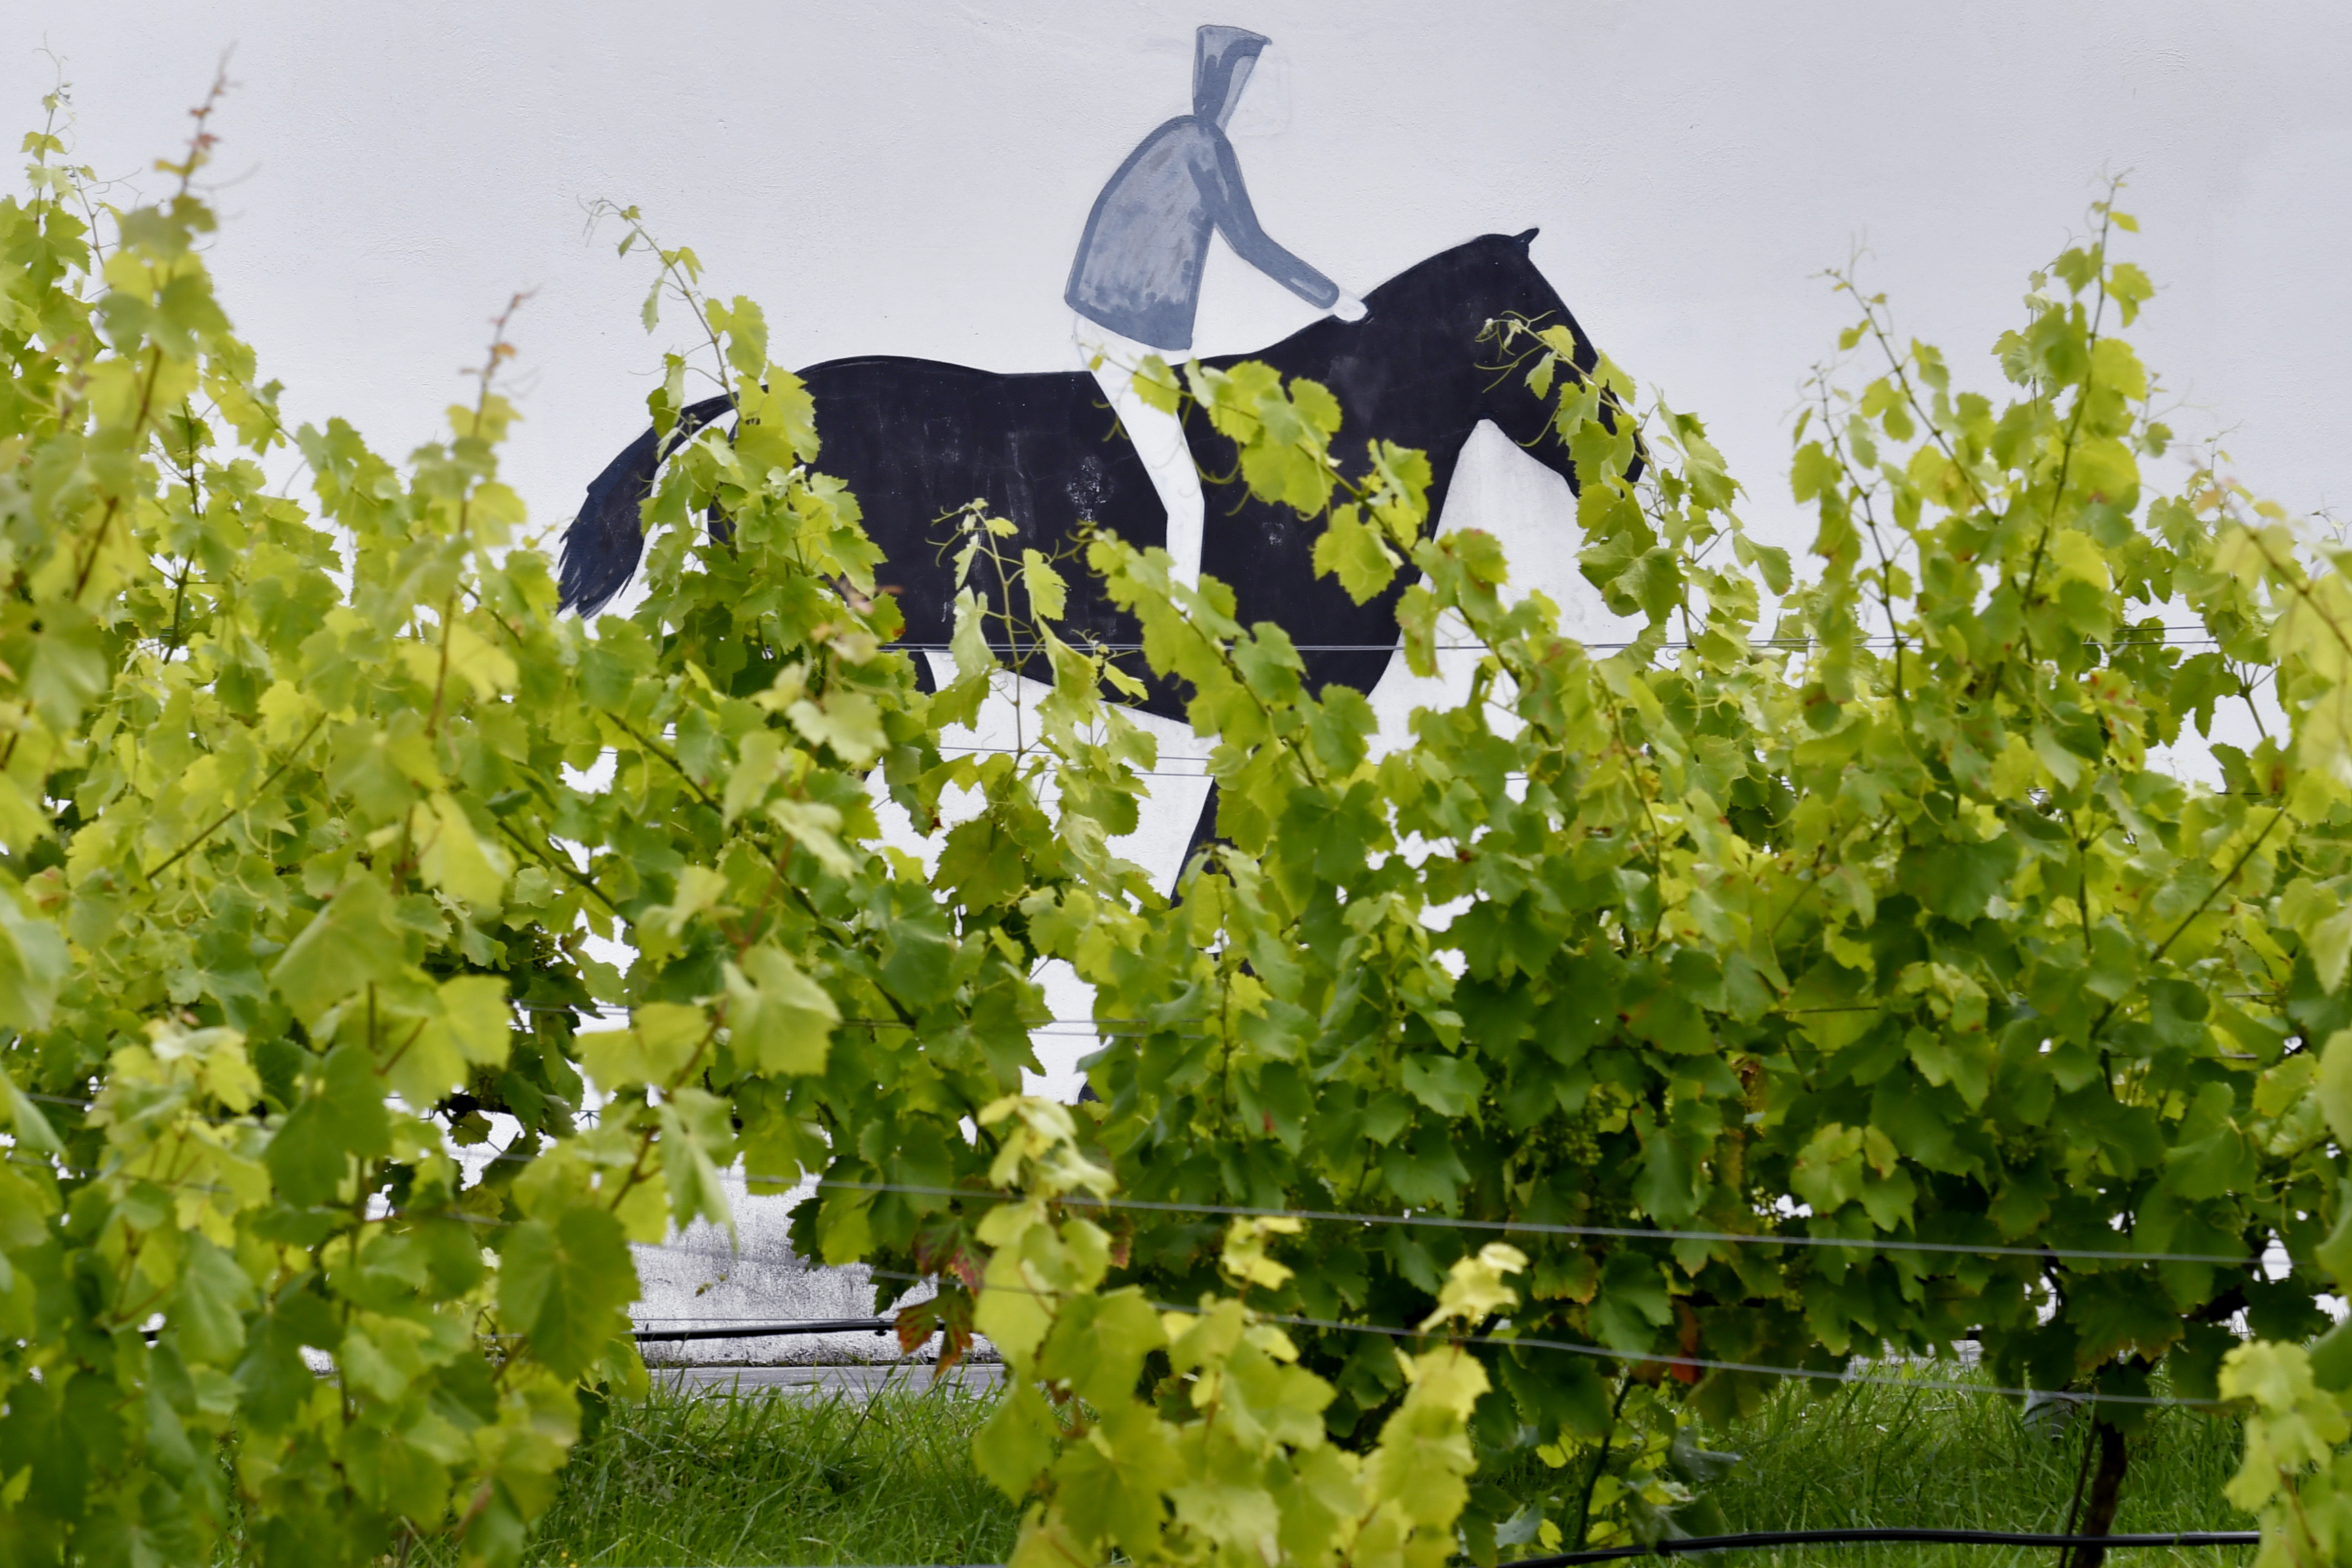 Dibujado como una silueta sobre una pared blanca, un jinete gris monta un caballo negro. Frente a ellos, un par de viñas frondosas en un huerto verde.